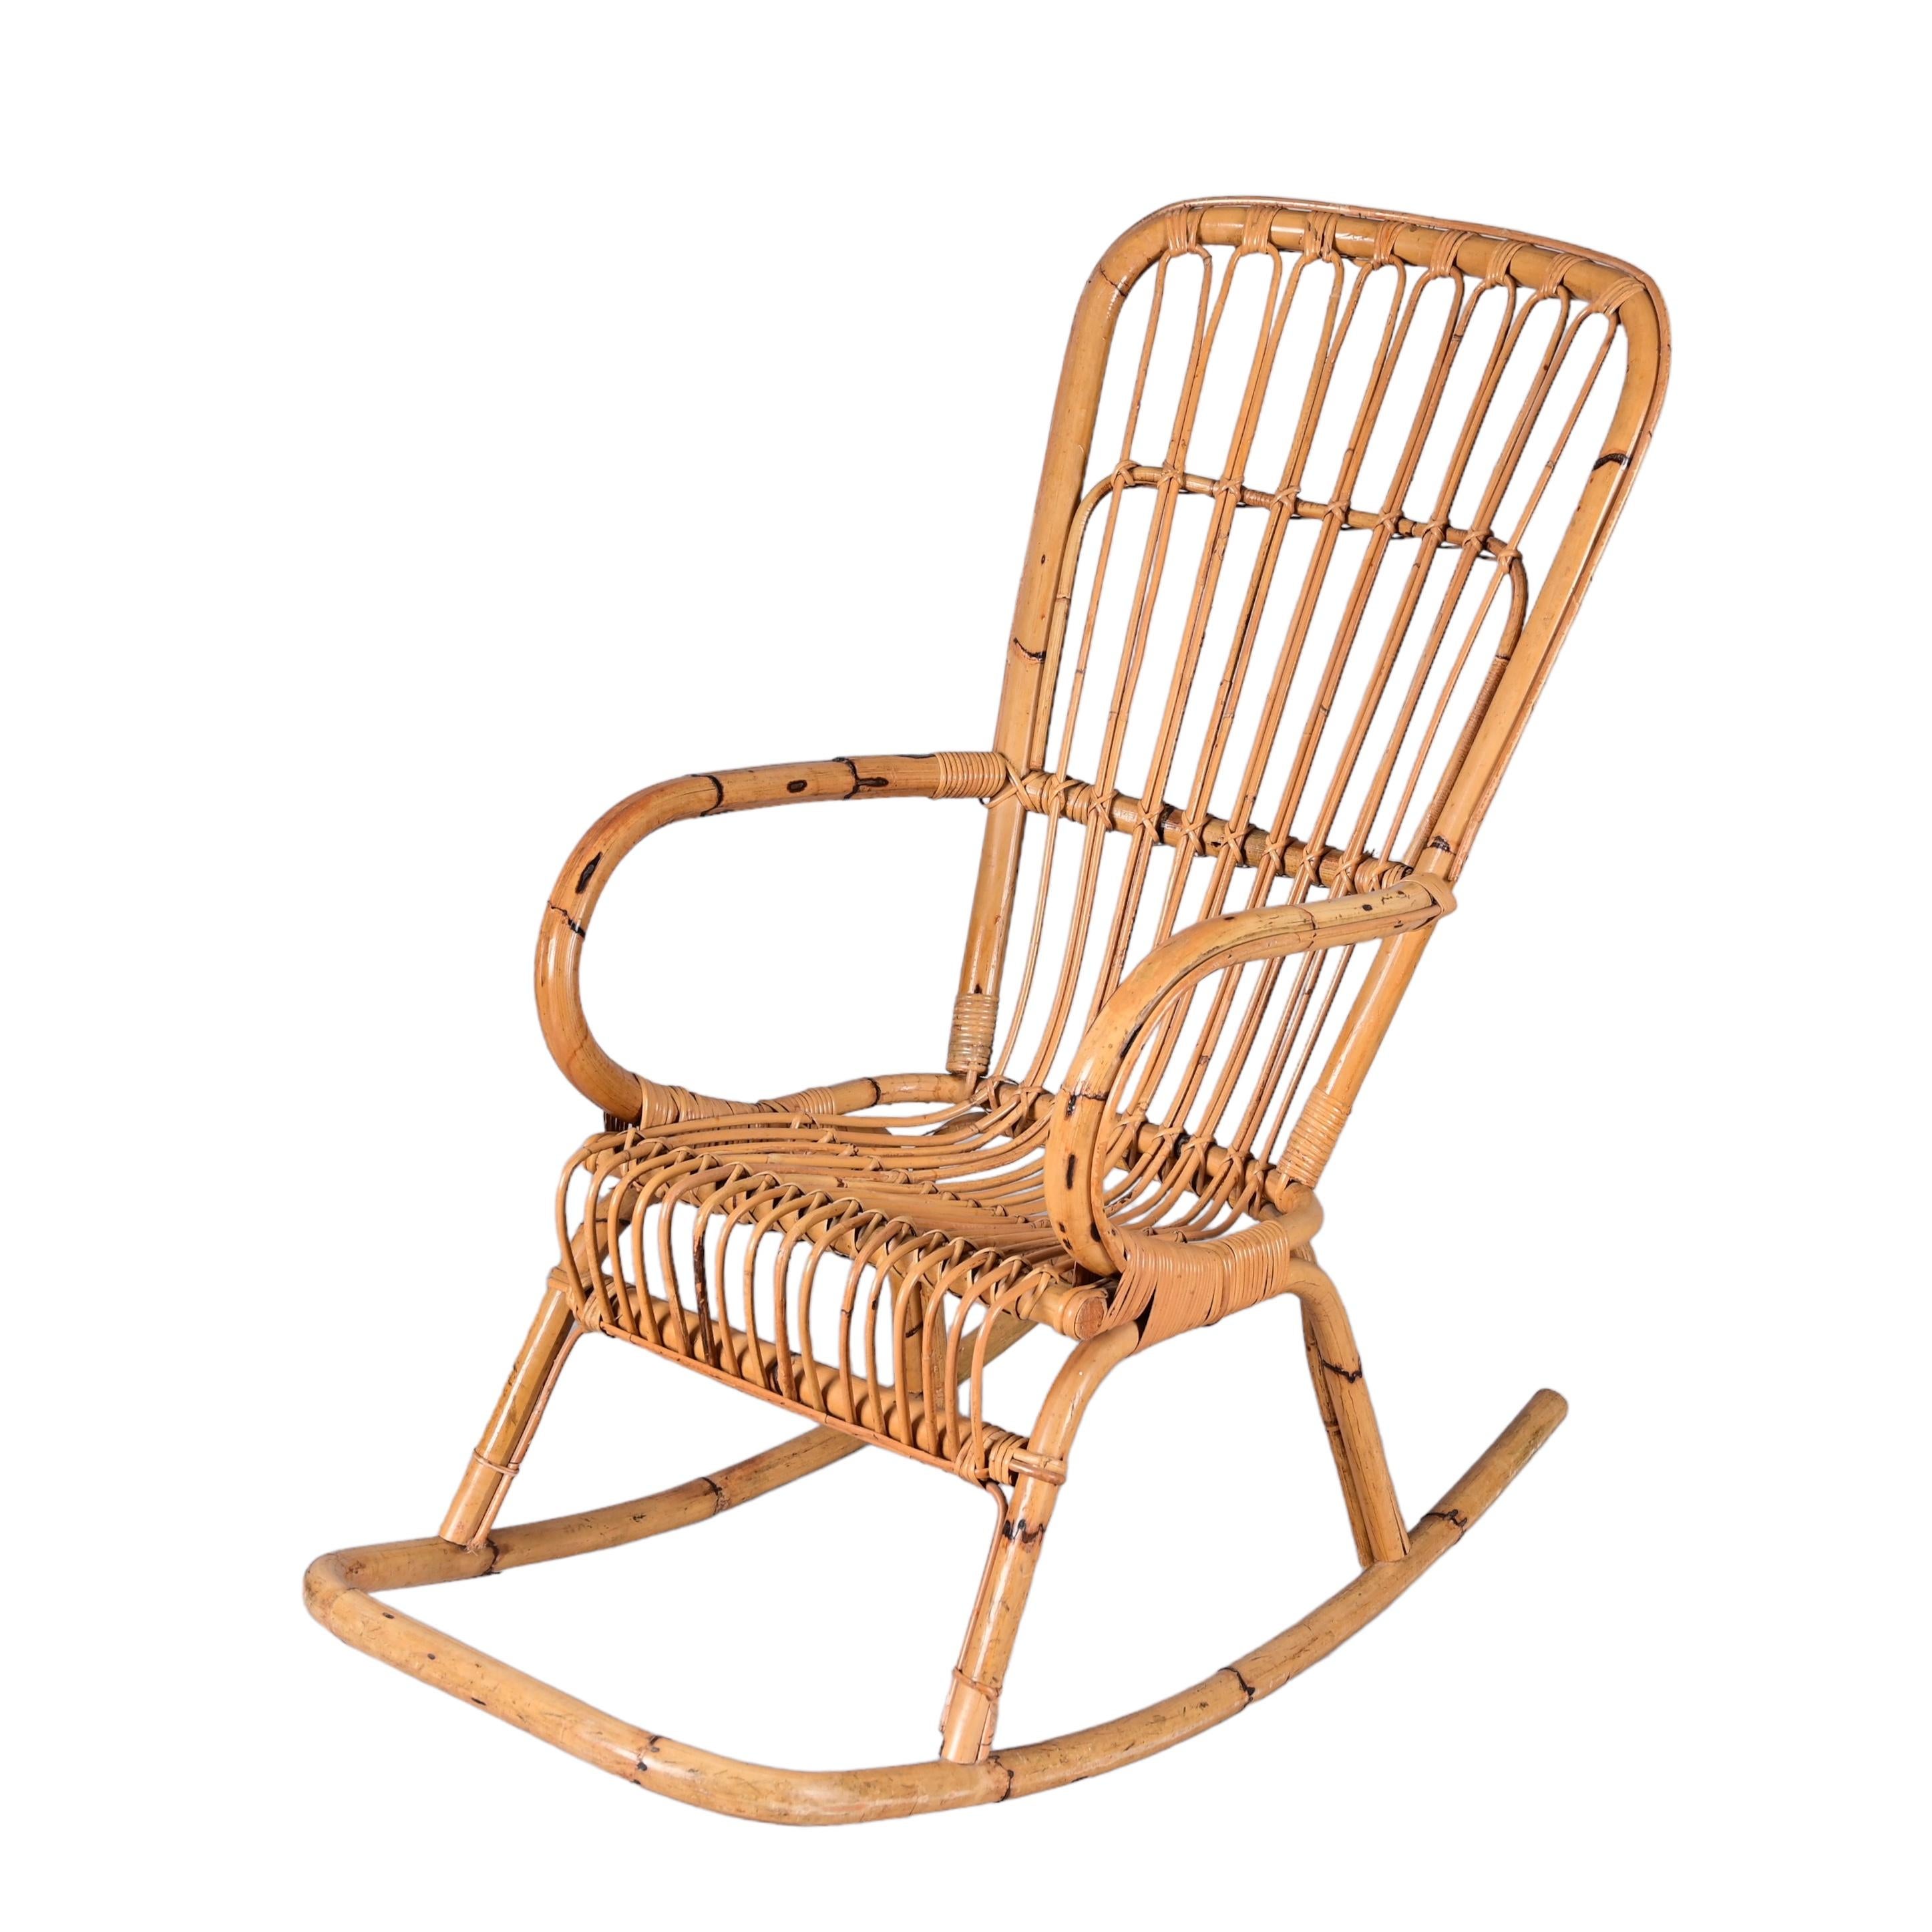 Eleganter französischer Riviera-Schaukelstuhl aus der Mitte des Jahrhunderts aus Rattan und Bambus. Dieses fantastische Stück wurde in den 1970er Jahren in Italien entworfen und hergestellt.

Dieser Stuhl ist einzigartig, weil er perfekte